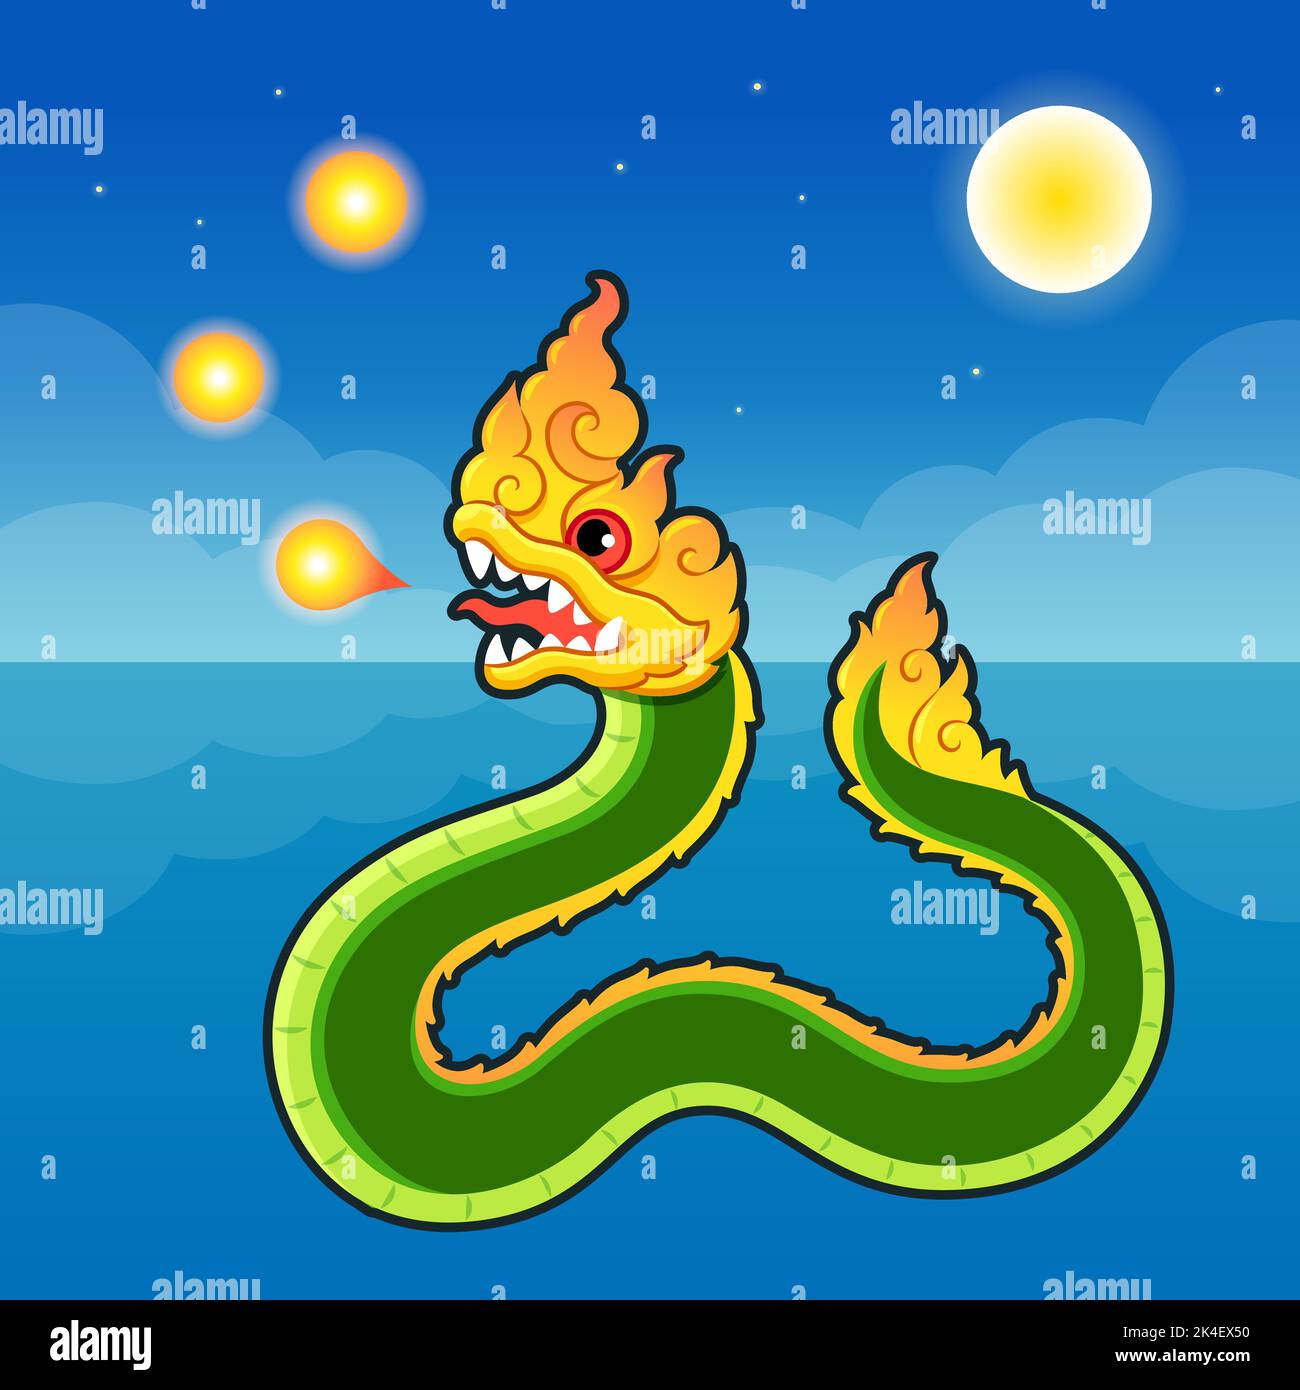 Naga Fireball Festival am Mekong Fluss in Thailand. Feuer atmende Naga-Schlange im modernen Cartoon-Stil. Vektorgrafik Clip Art Illustration. Stock Vektor